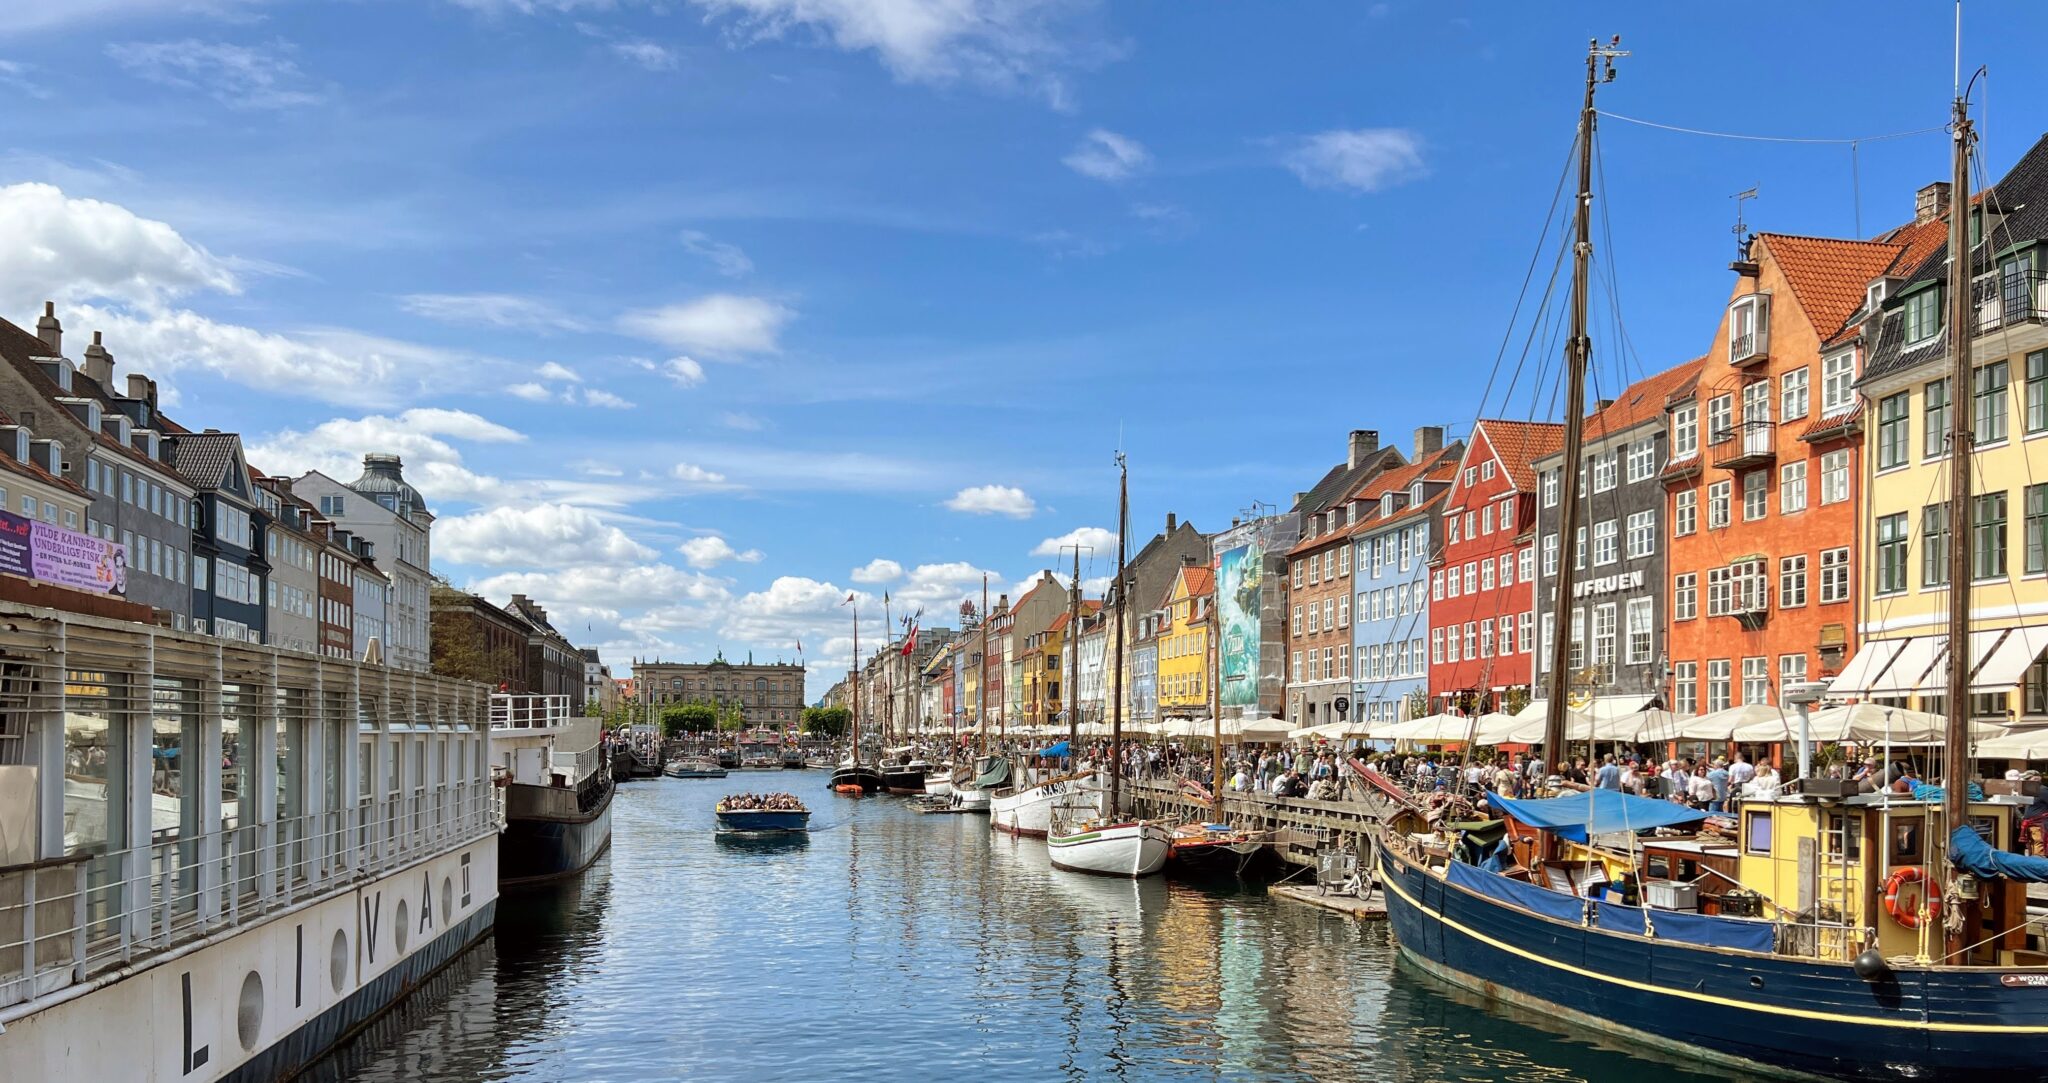 Der Nyhavn ist ein zentraler Hafen in der dänischen Hauptstadt Kopenhagen und eine der wichtigsten Sehenswürdigkeiten der Stadt.